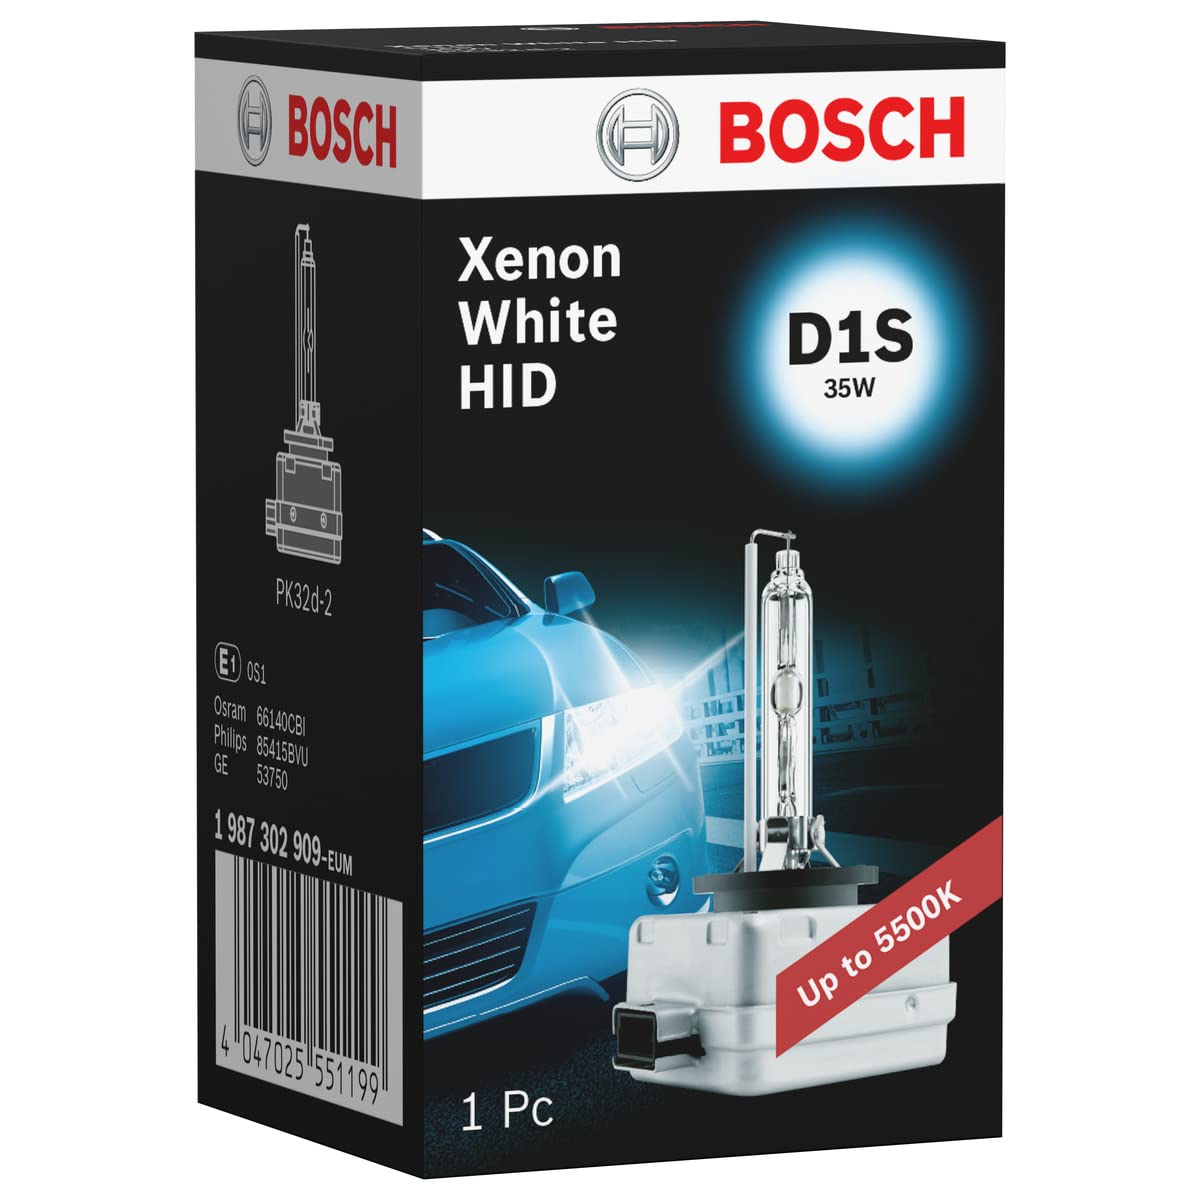 Bosch D1S Xenon White HID Lampe - 35 W PK32d-2 - 1 Stück von Bosch Automotive